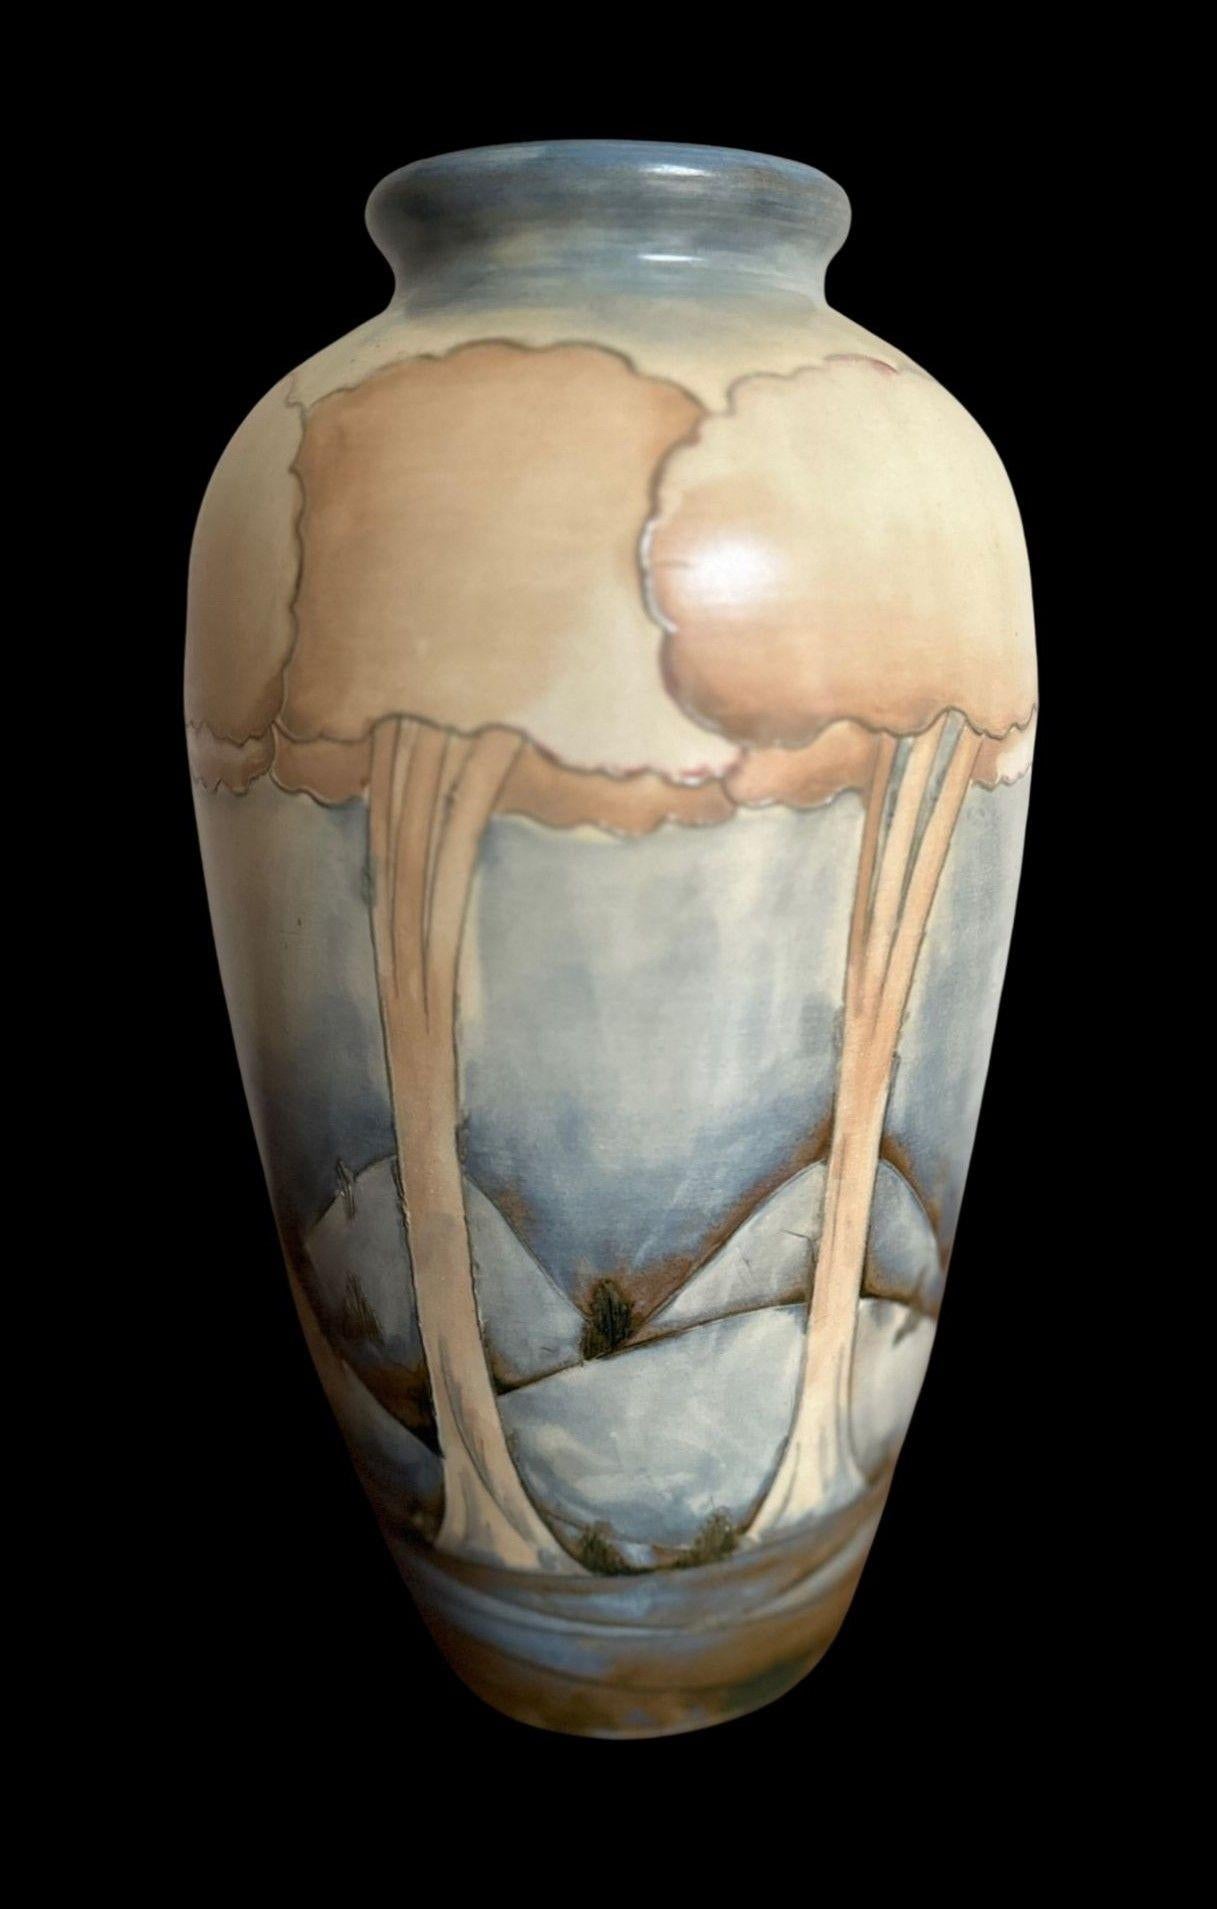 20th Century William Moorcroft Vase For Sale